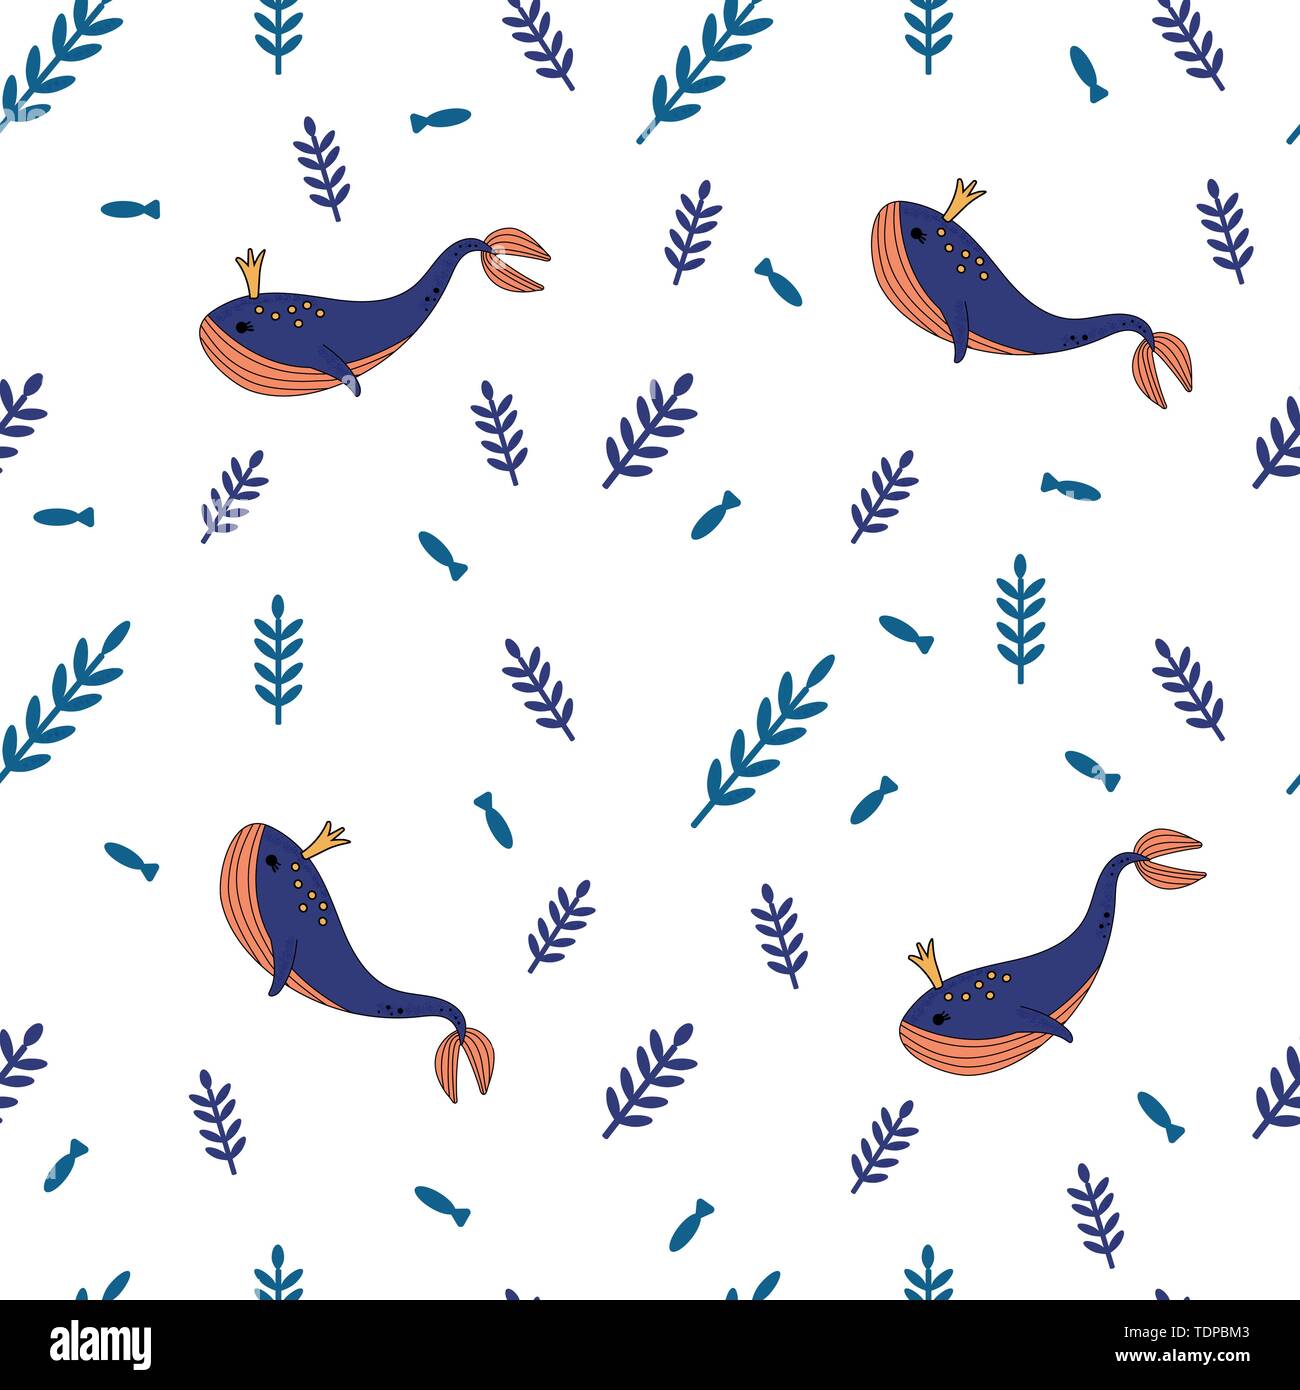 Marine whale Hintergrund handgezeichnete Vektorgrafiken - nahtlose Muster der Blauen Muscheln und Algen. Doodle Stil perfekt für Einladungen, Begrüßung Stock Vektor